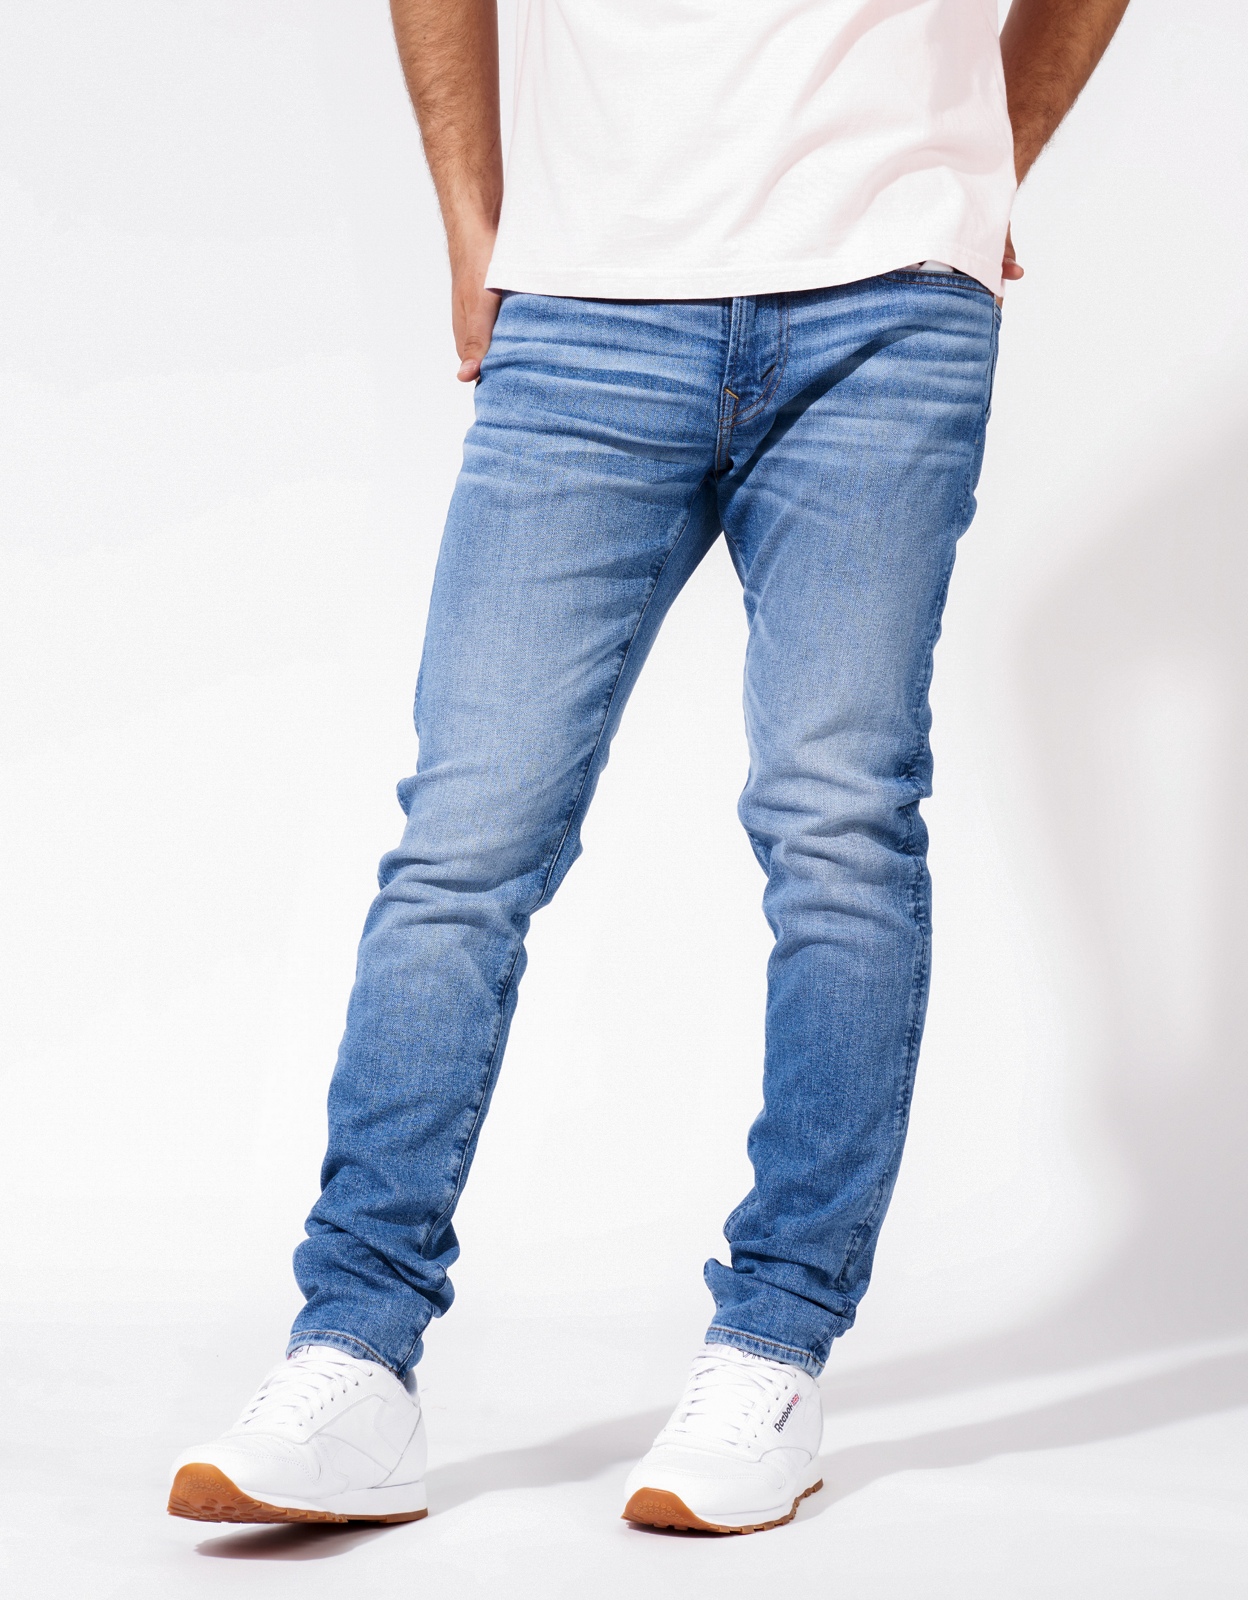 Buy AE AirFlex+ Athletic Skinny Jean | American Eagle Outfitters Jordan